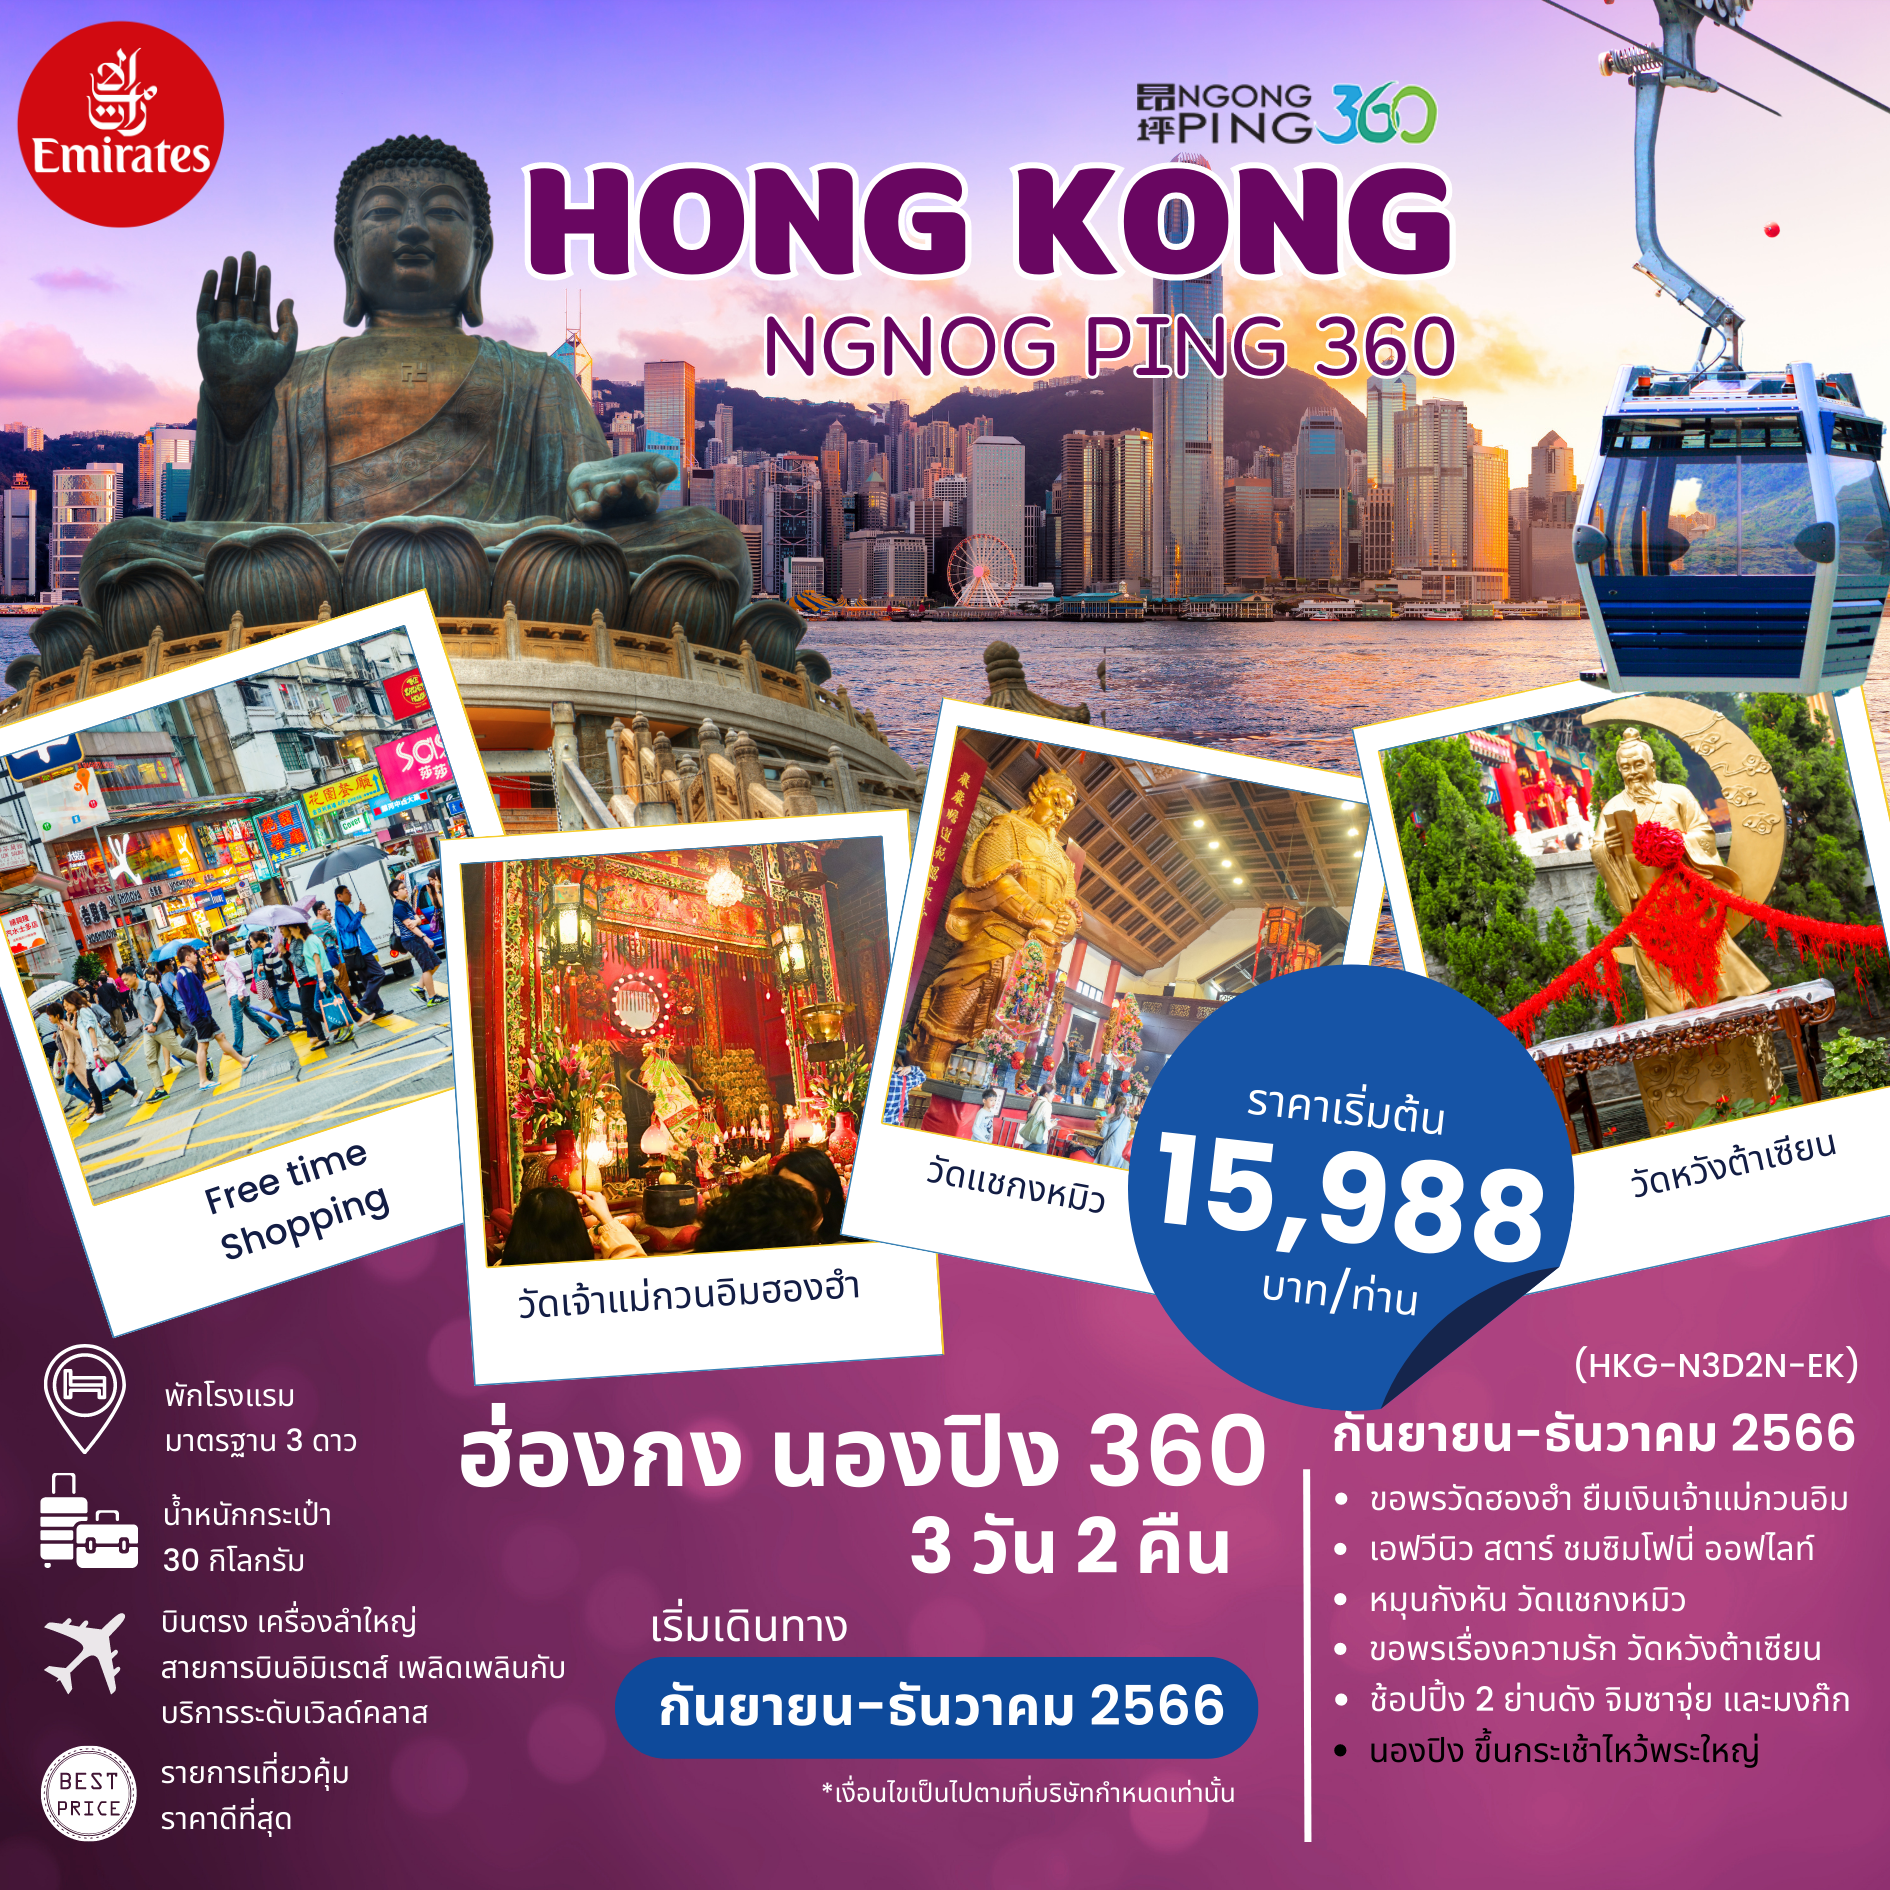 ทัวร์ฮ่องกง HONGKONG นองปิงไหว้พระใหญ่ ขอพรเจ้าแม่กวนอิม 3วัน2คืน ( HKG-NP-3D2N-EK)BY EMIRATES